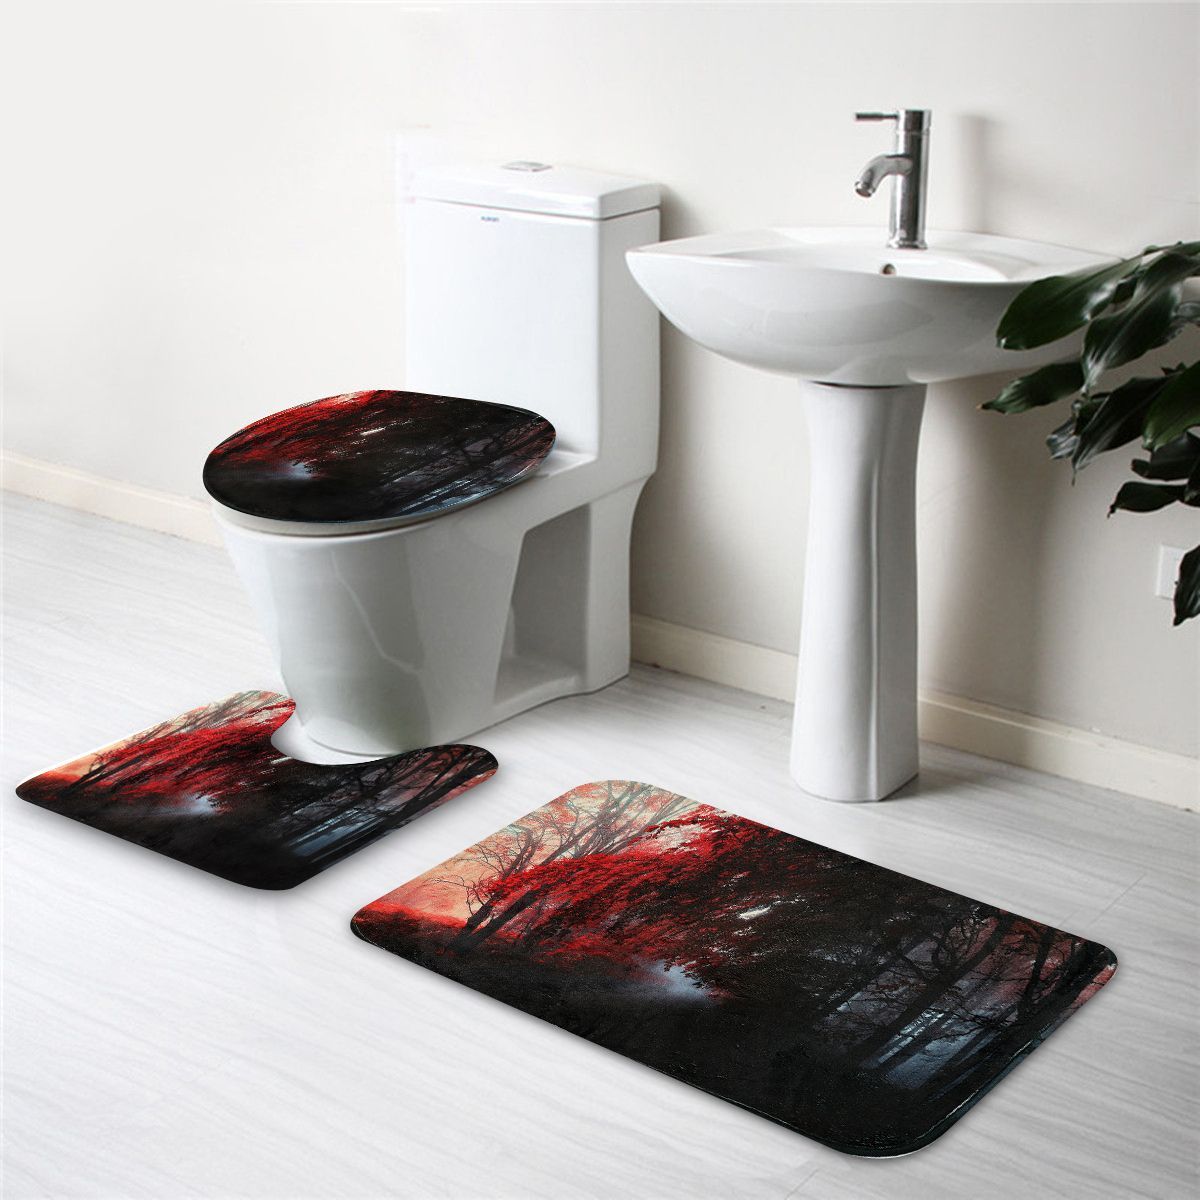 3PcsSet-Bath-Carpet-Set-Forest-Pattern-Non-Slip-Bathroom-Toilet-Seat-Covers-Floor-Mats-Rug-Set-1444003